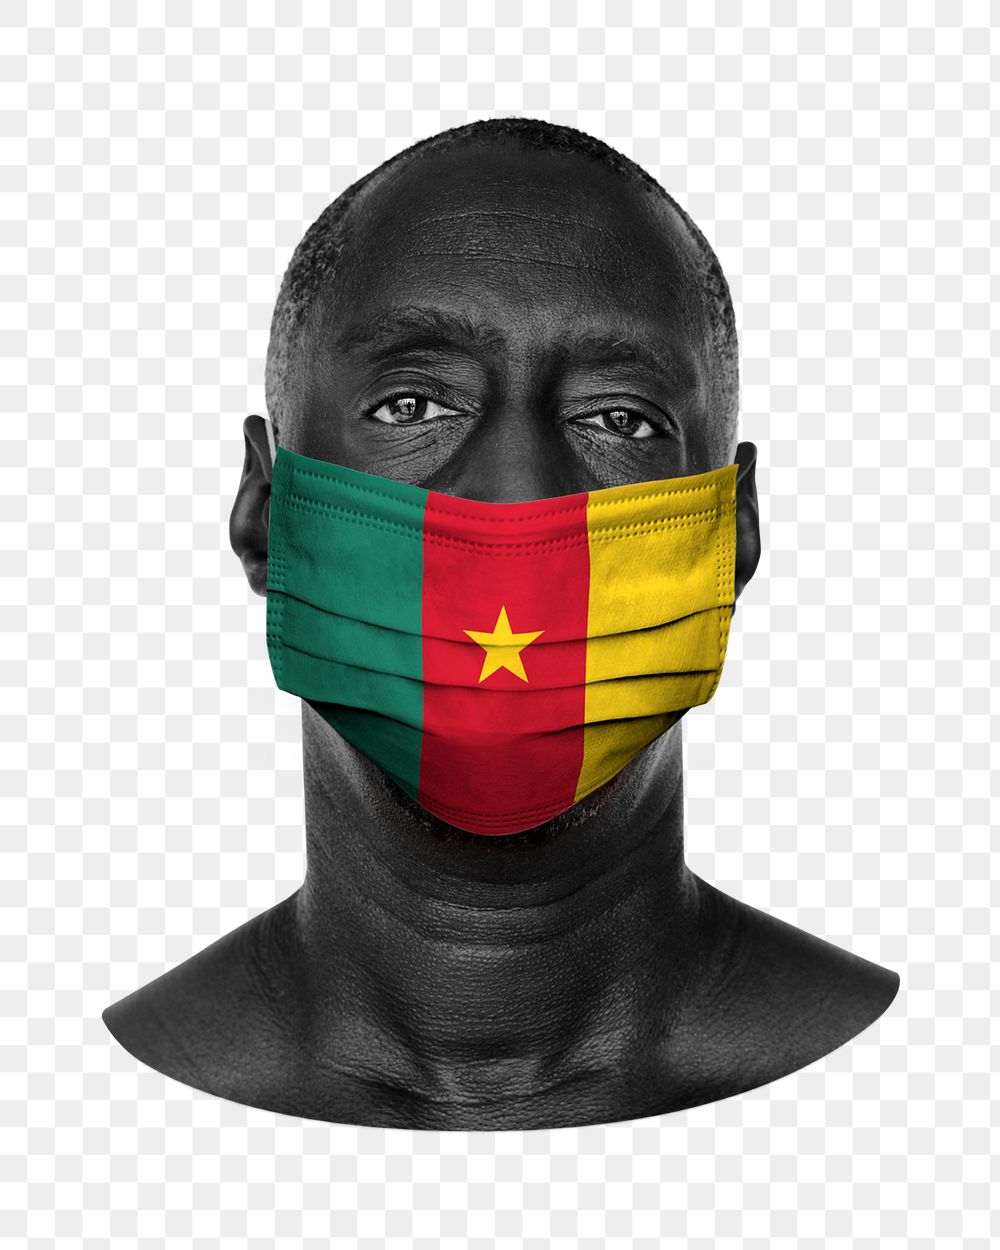 Png Cameroon flag mask, man portrait on transparent background